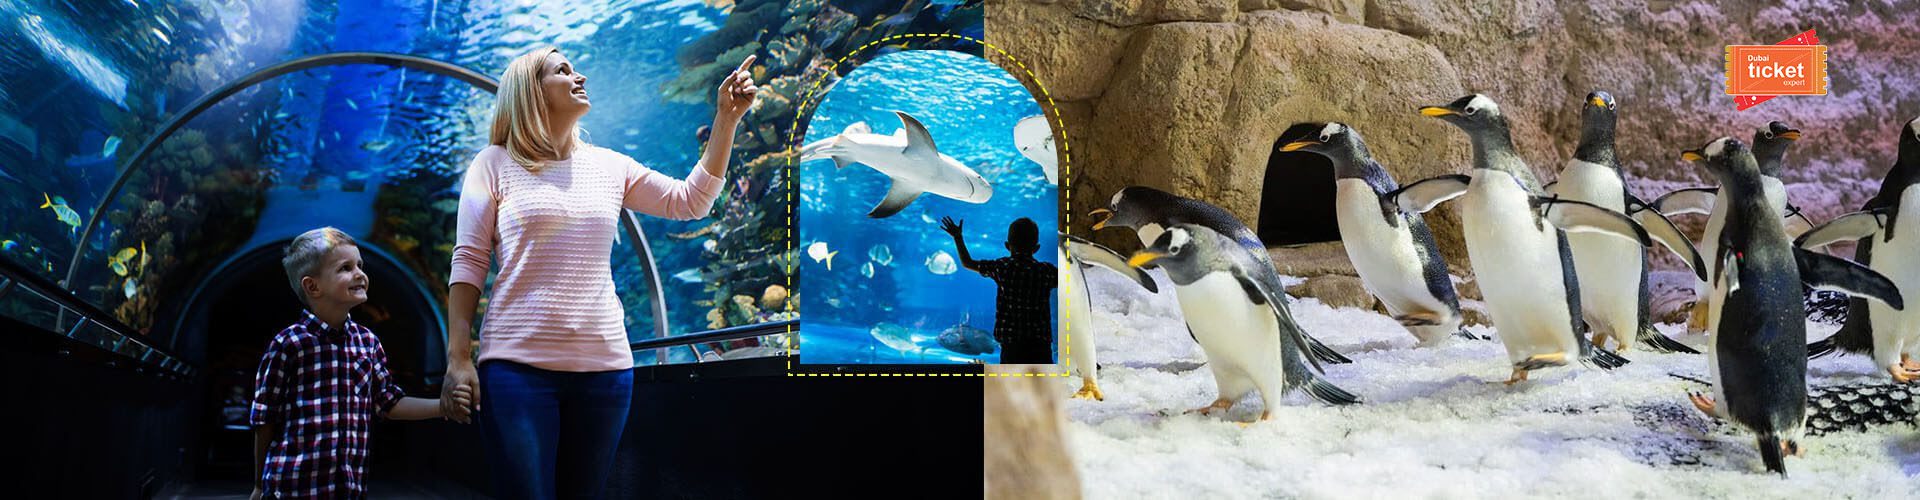 Dubai Aquarium and Penguin Cove Tickets